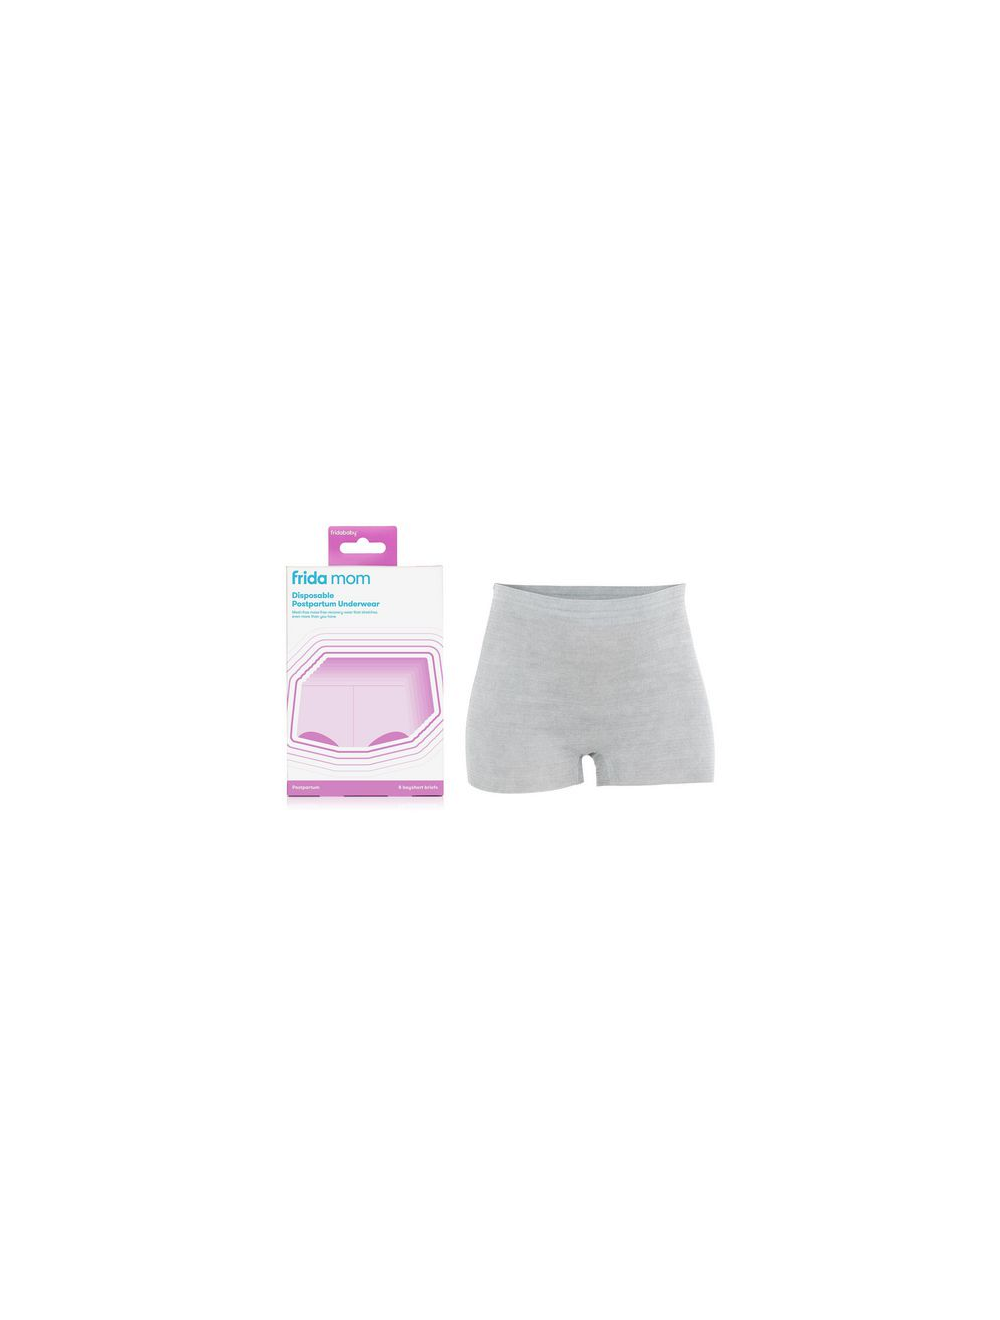 Fridababy Fridamom Disposable Underwear Postpartum Regular - 8 briefs